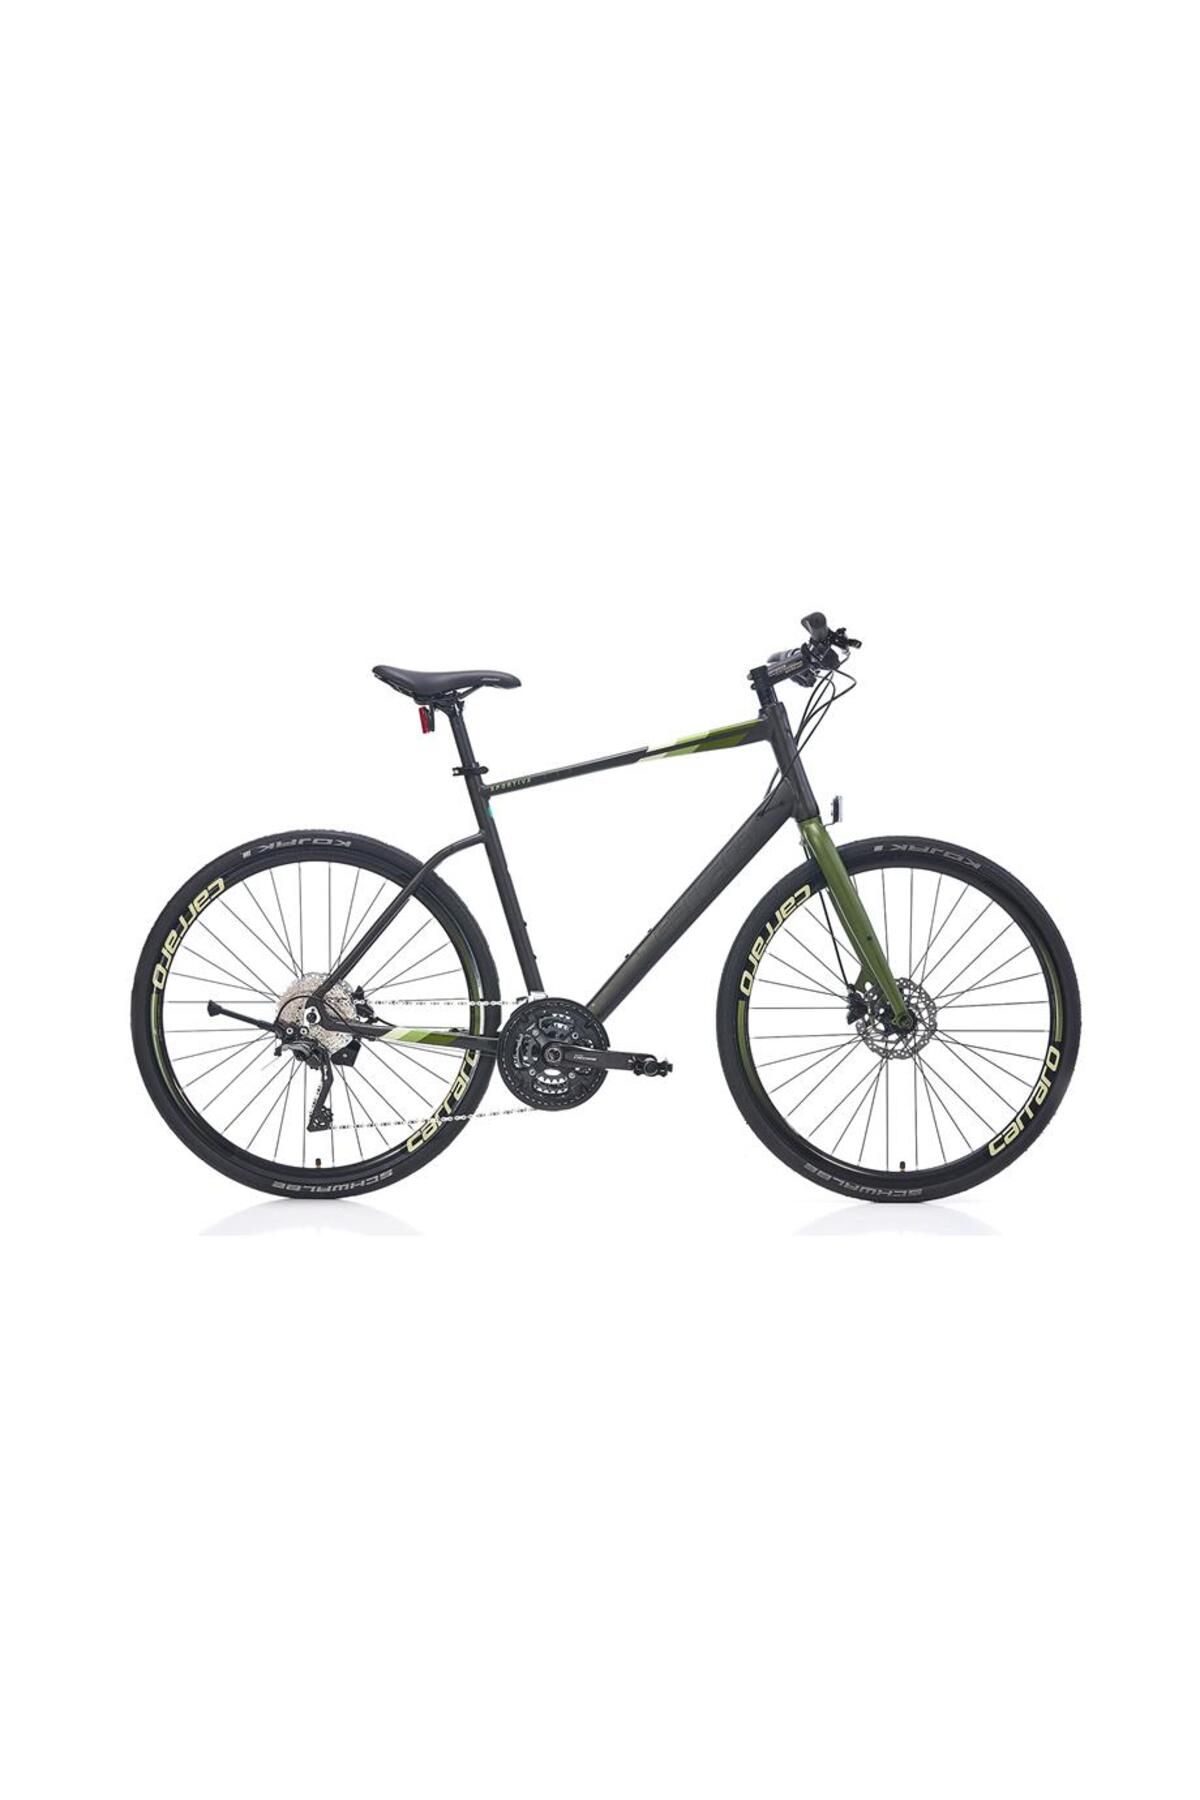 Carraro Sportıve 330 Erkek Şehir Bisikleti 560h Hd 28 Jant 30 Vites Mat Koyu Gri Haki Açık Yeşil